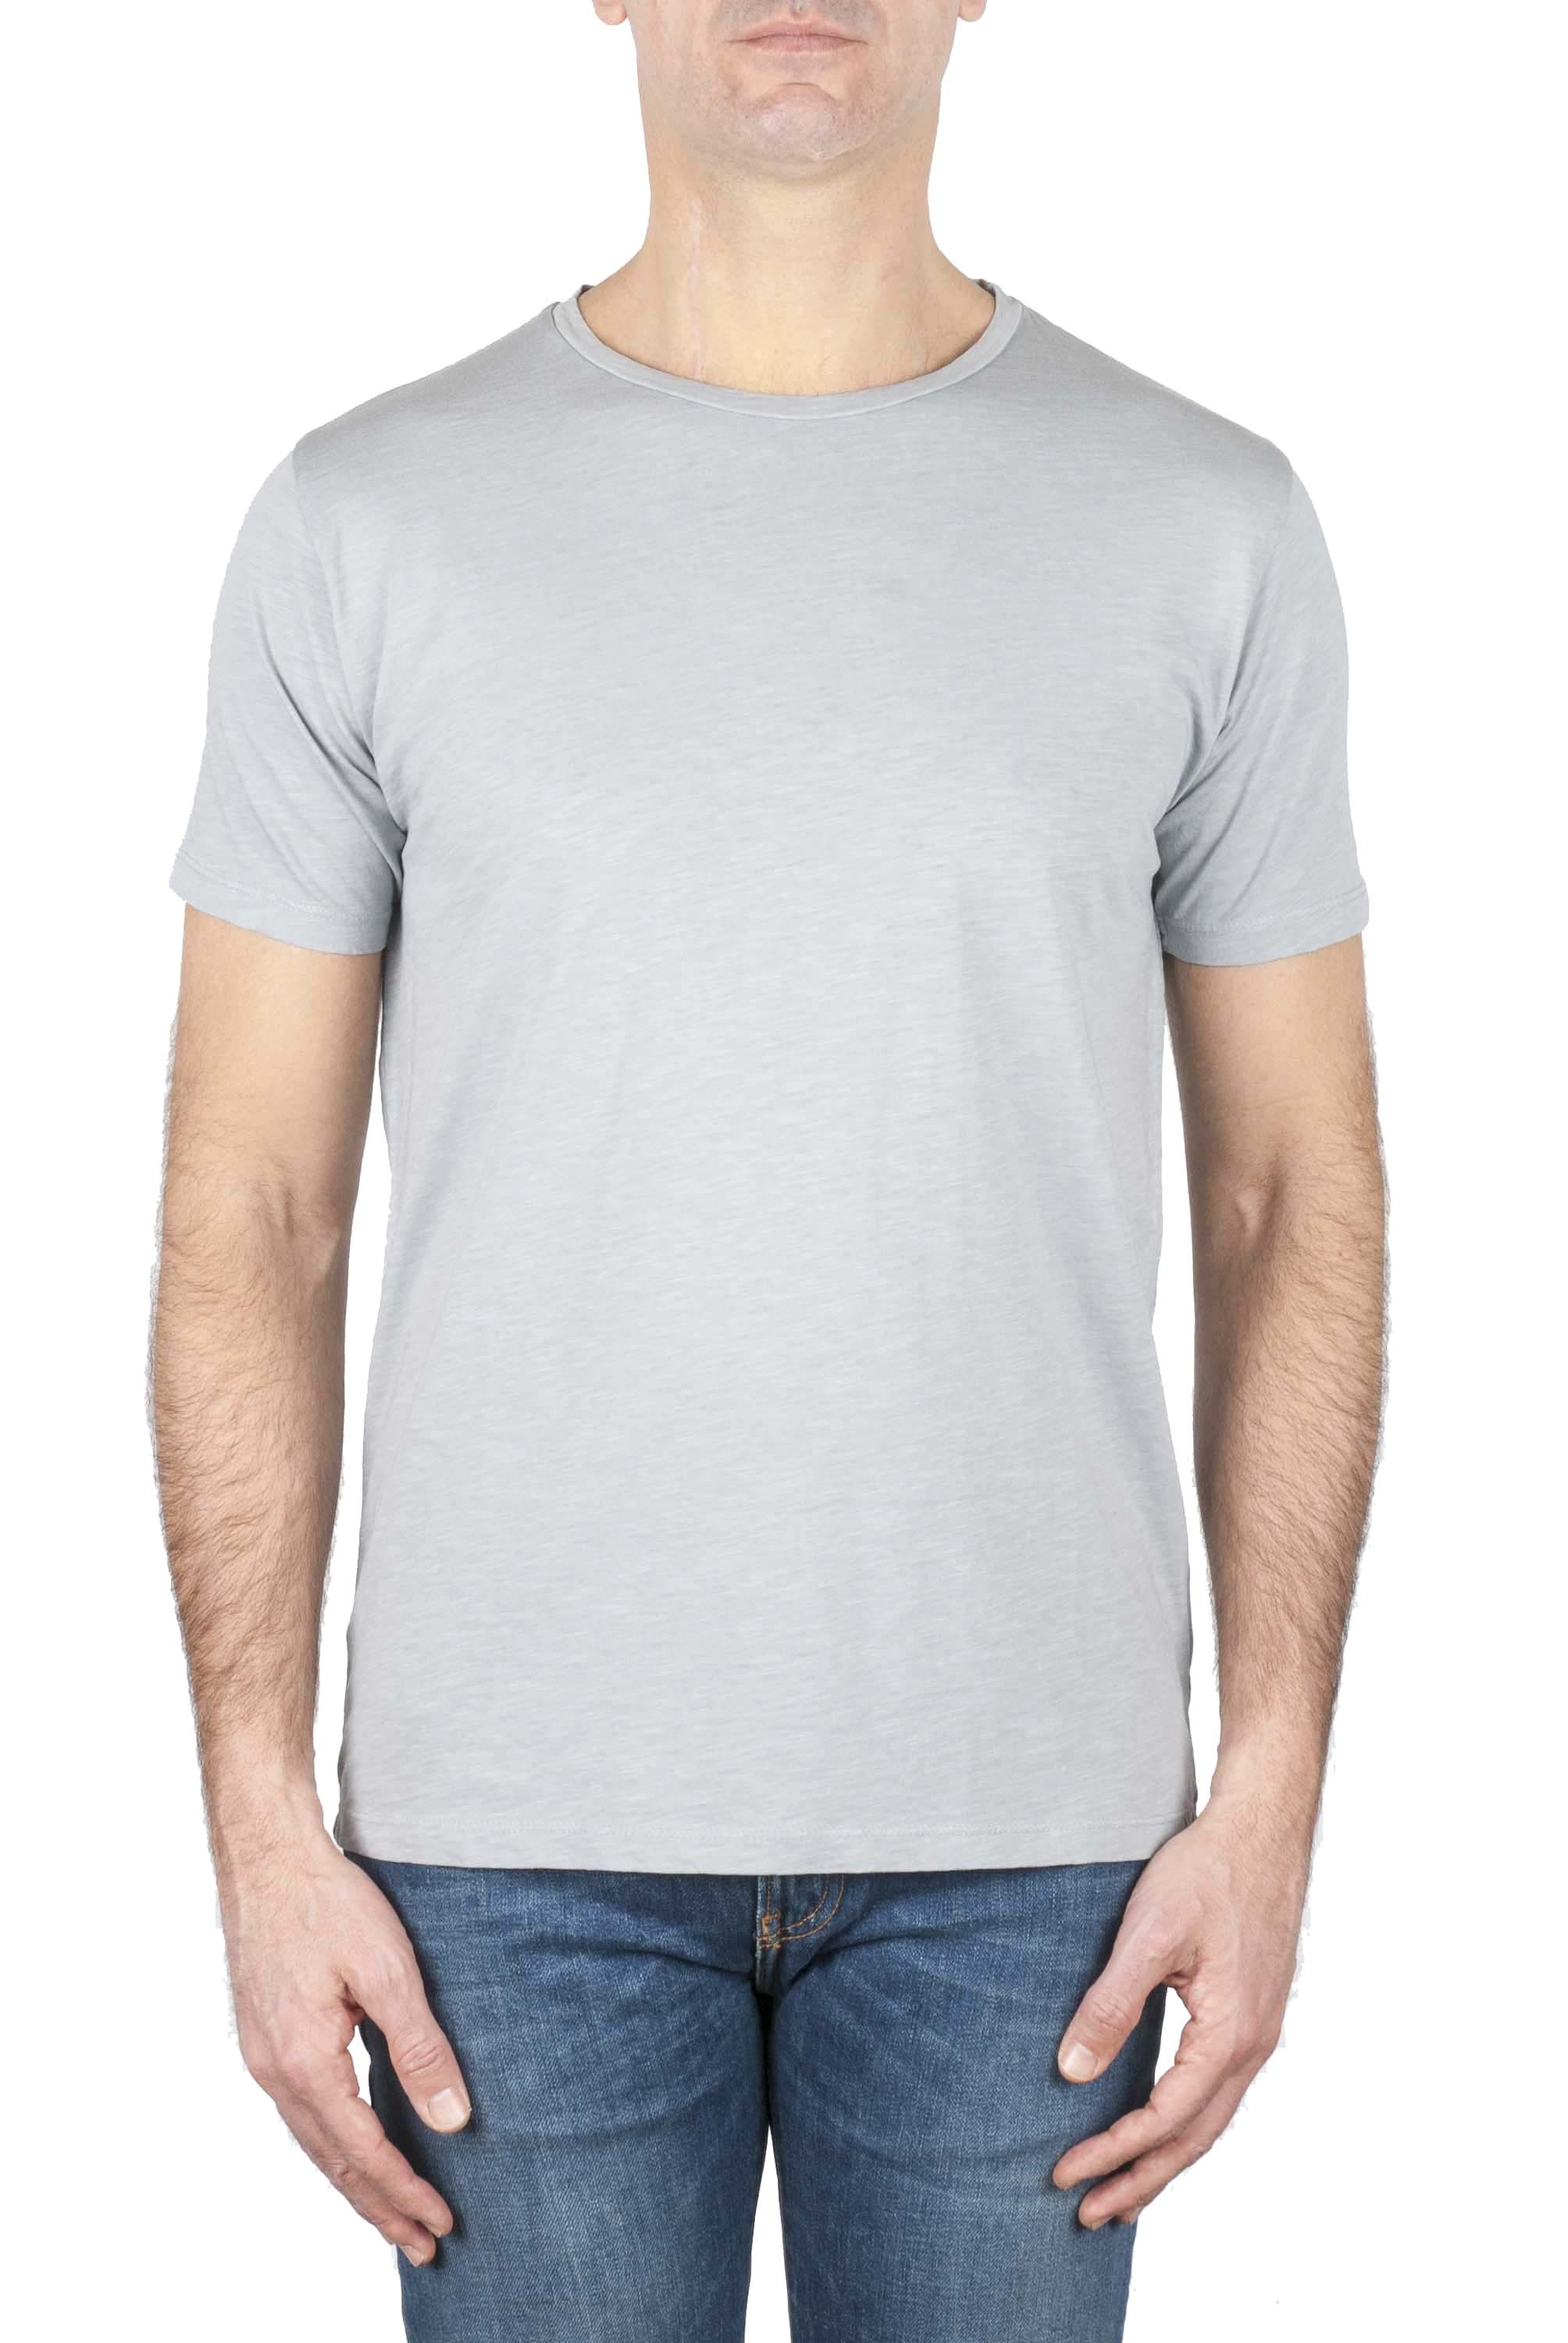 SBU 01639_19AW Camiseta de algodón con cuello redondo en color gris perla 01